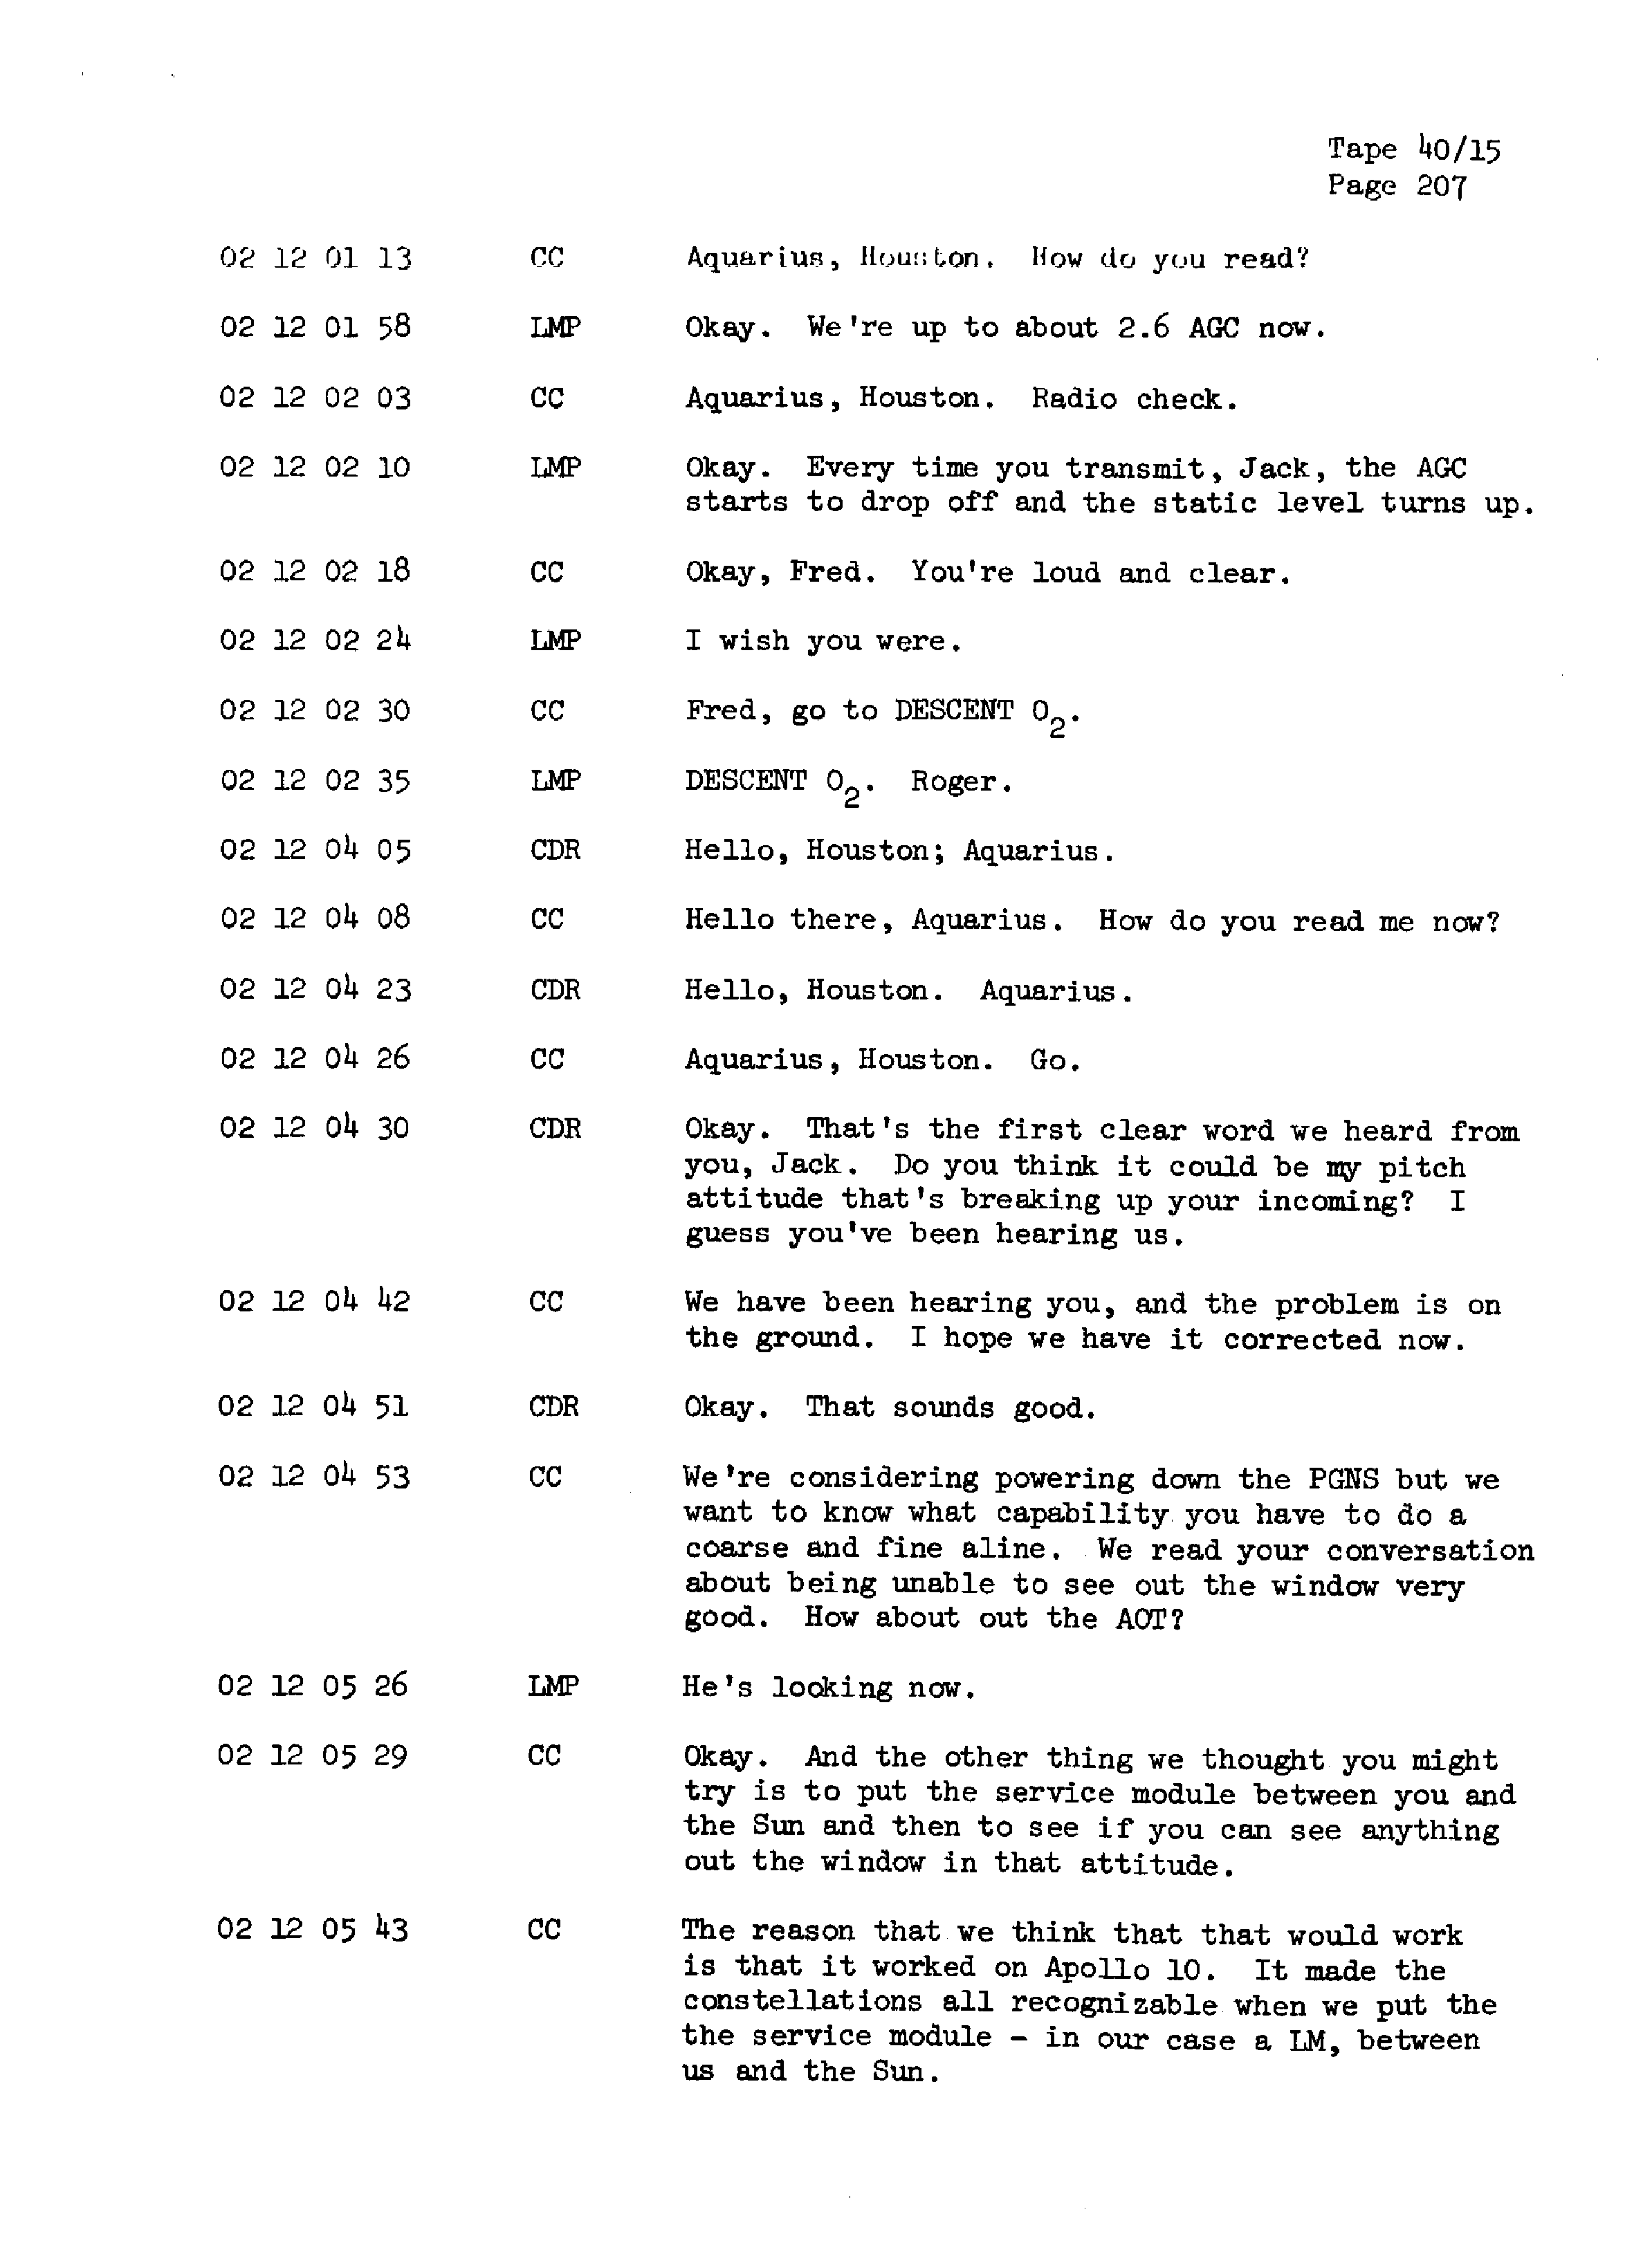 Page 214 of Apollo 13’s original transcript